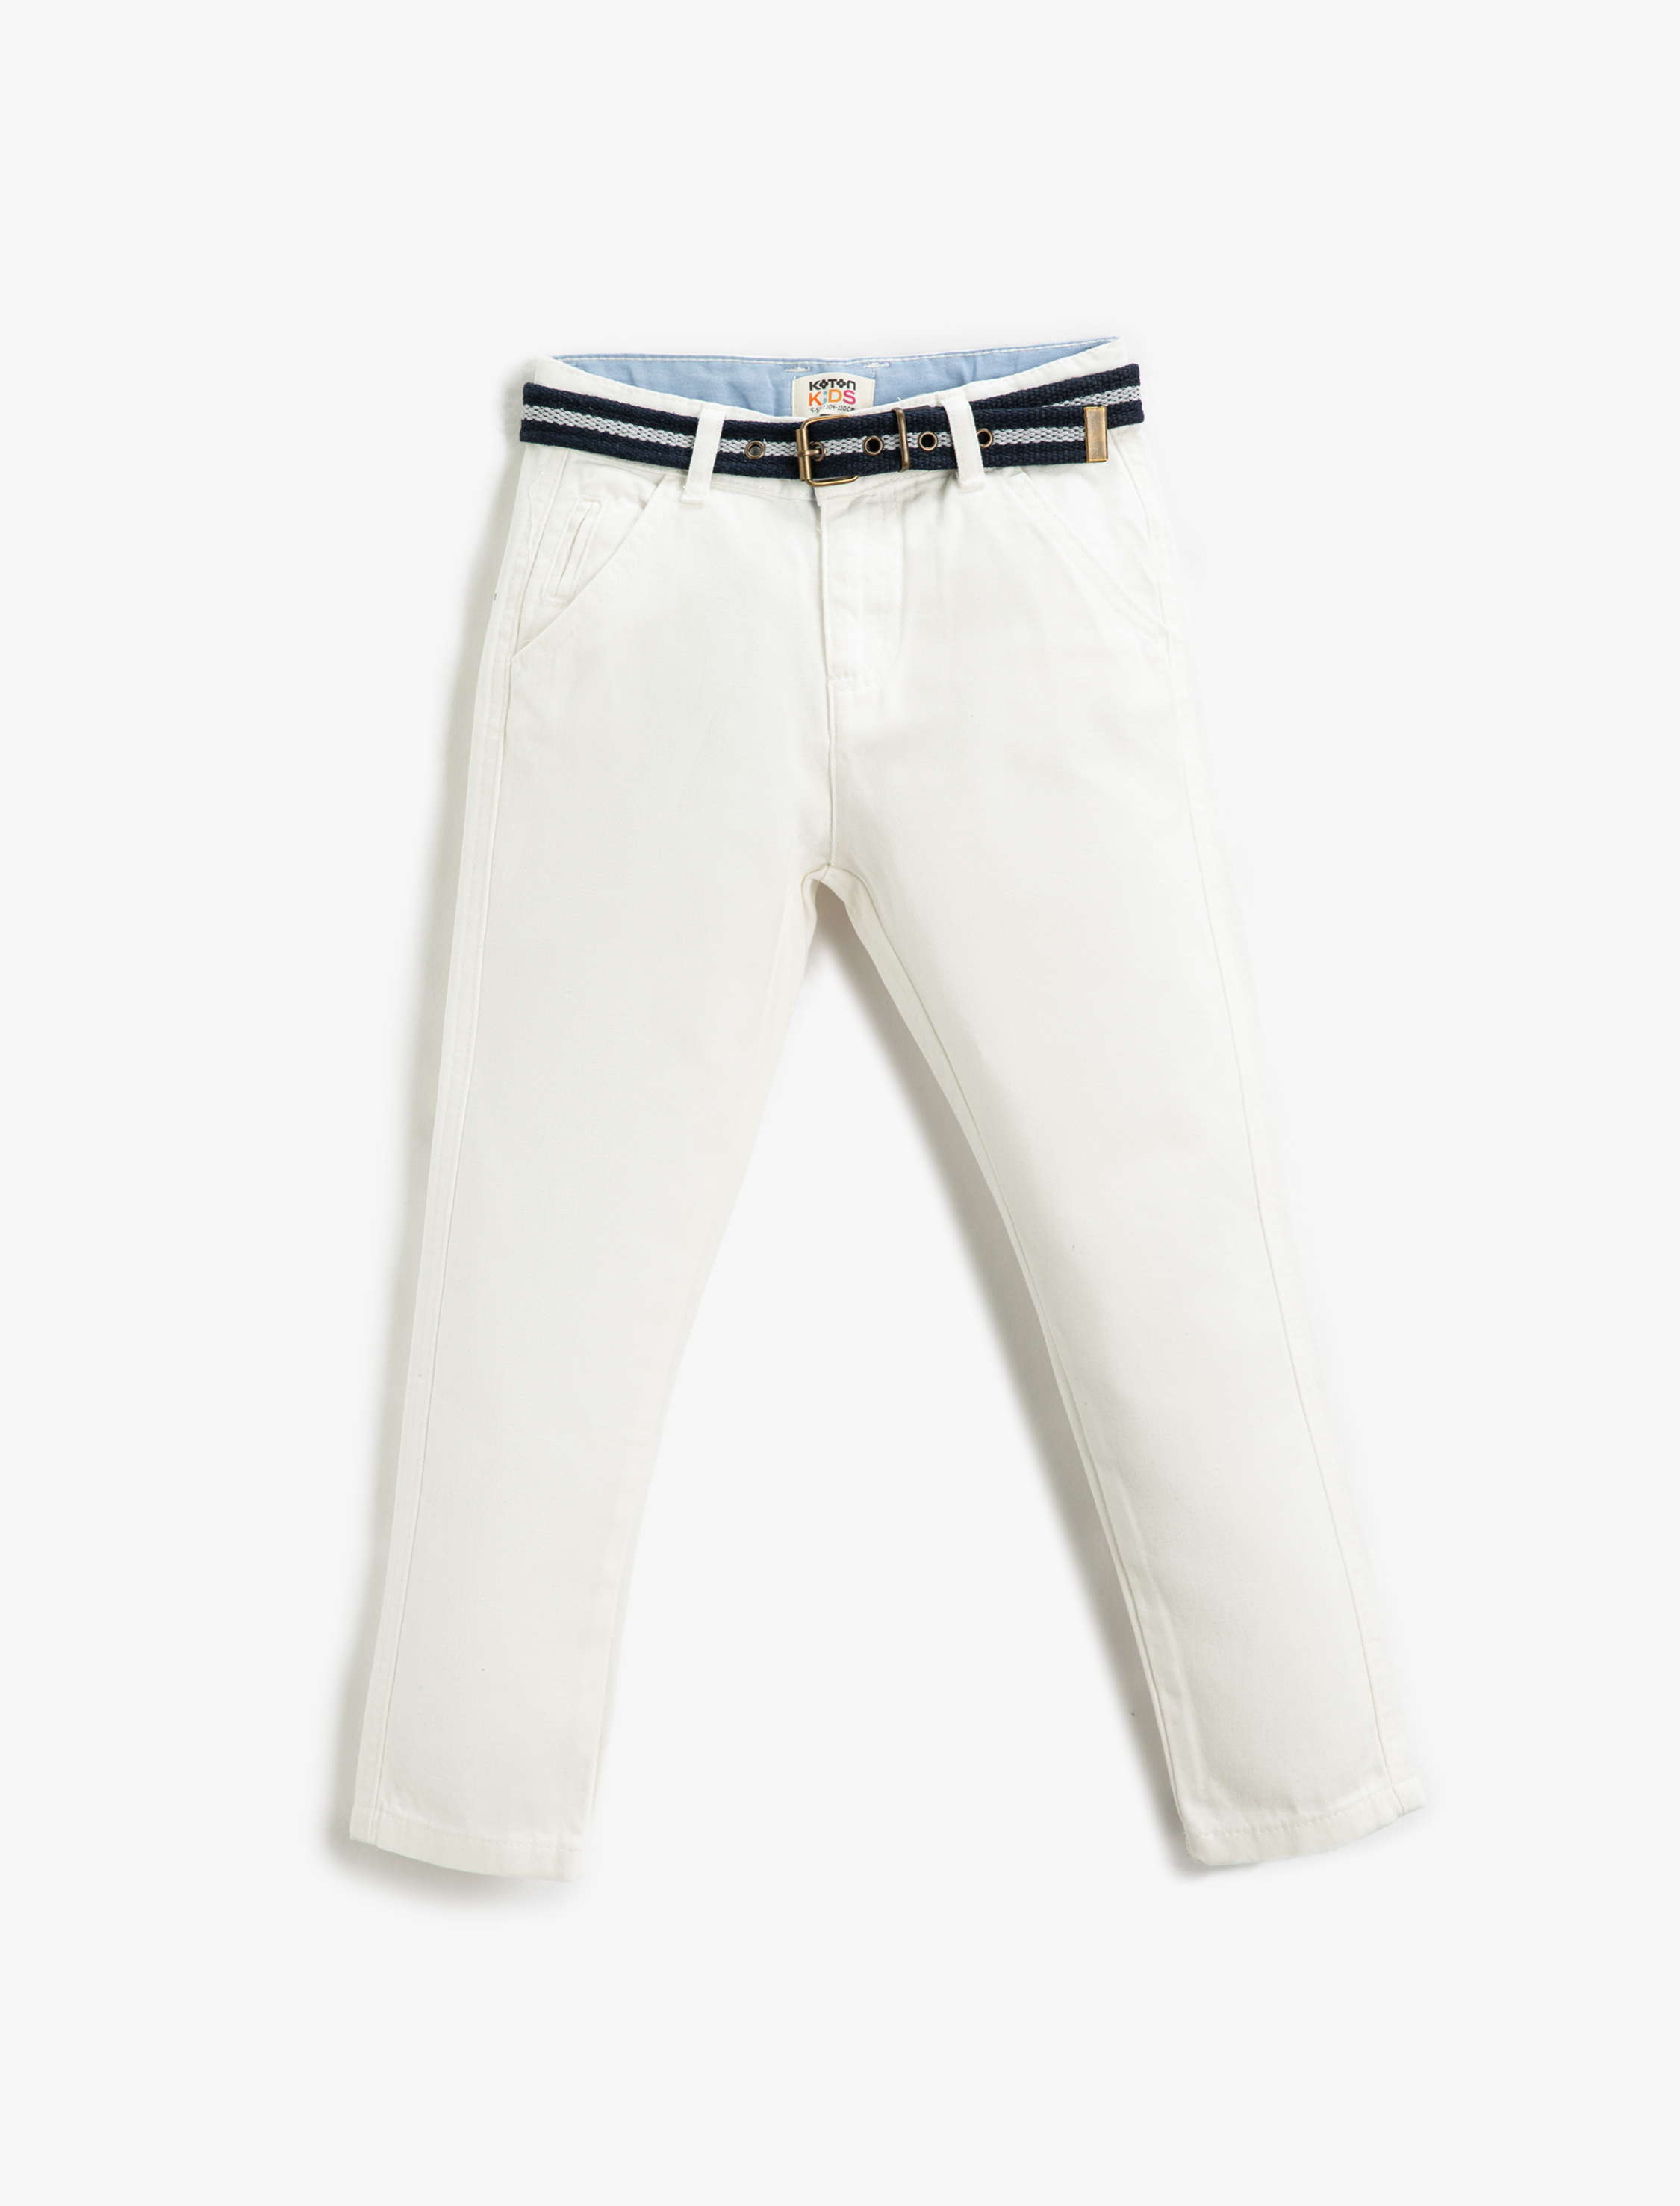 Koton Kumaş Pantolon Slim Fit Kemerli Cepli Beli Ayarlanabilir Lastikli Beli Ayarlanabilir Lastikli. 4